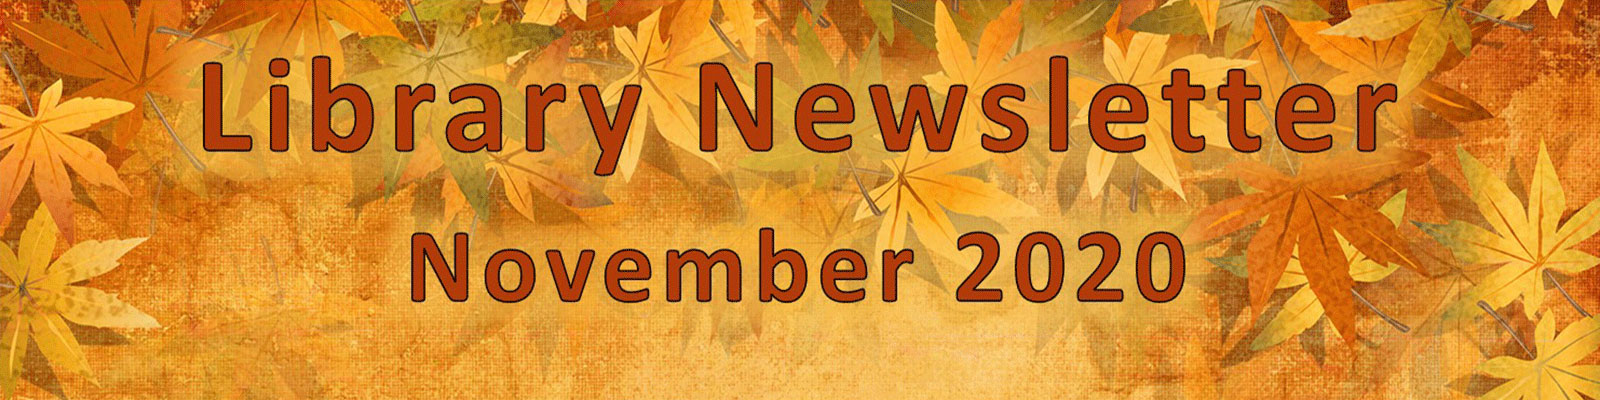 Nov 2020 Newsletter Banner